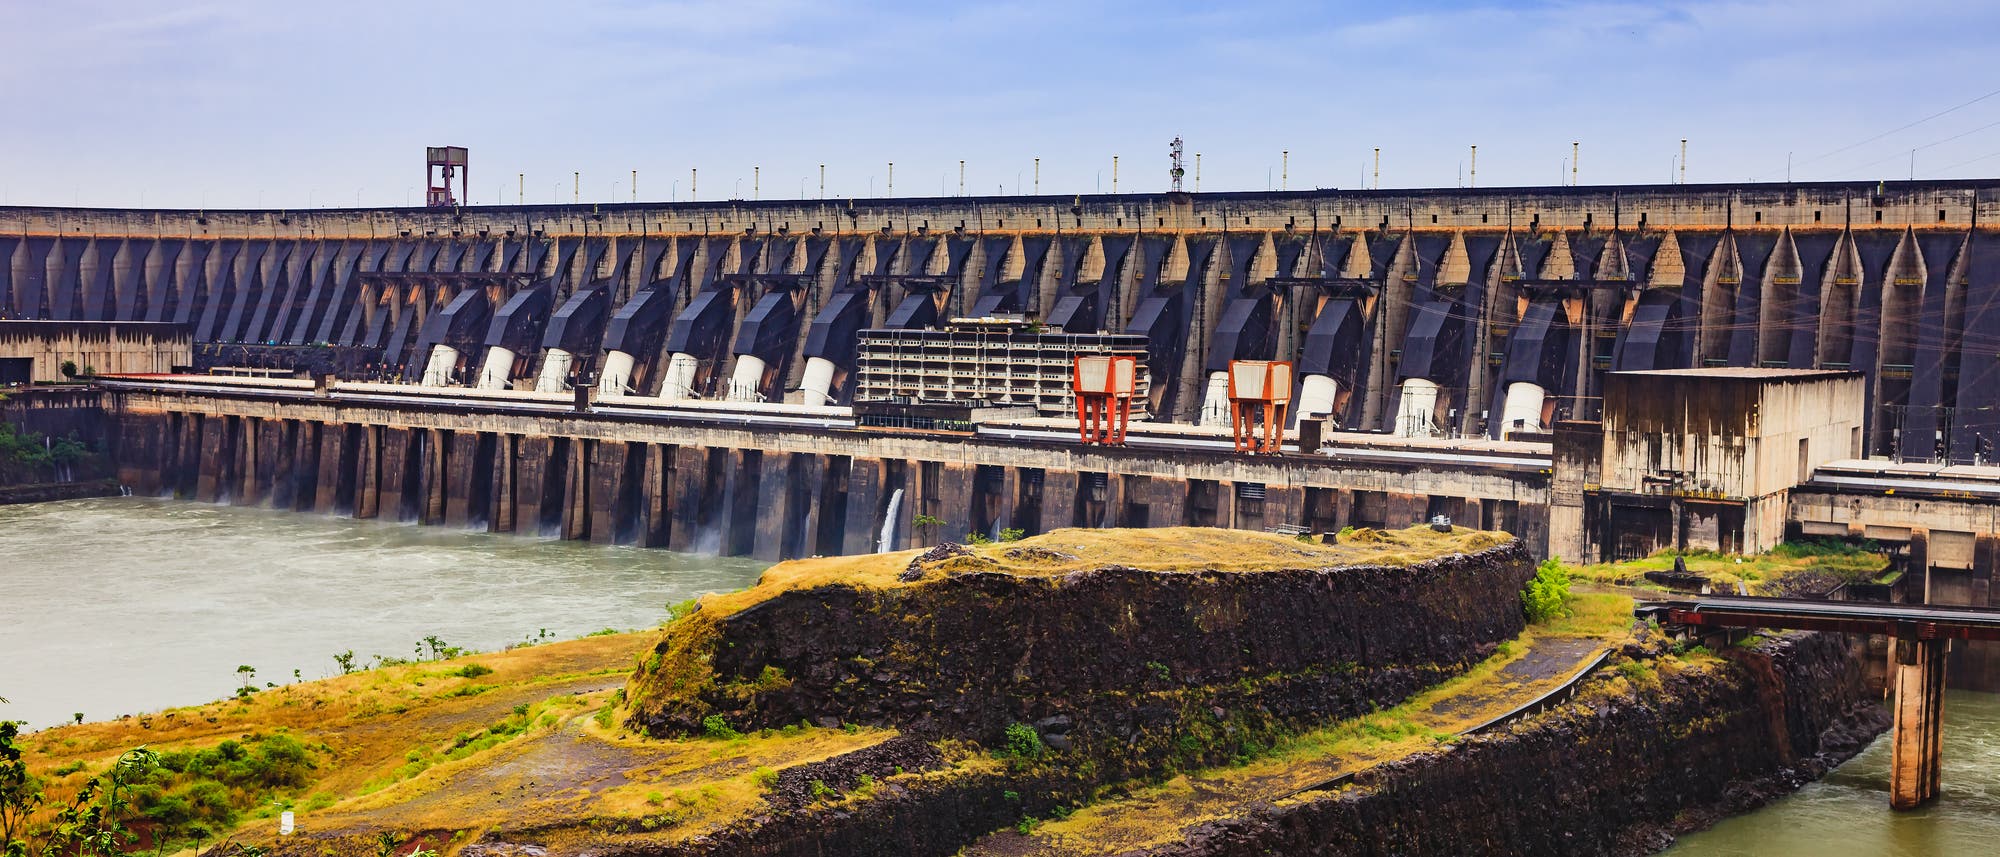 Der Itaipu-Staudamm versorgt große Teile Brasiliens und Paraguays mit Strom, ging aber auf Kosten des Regenwaldes